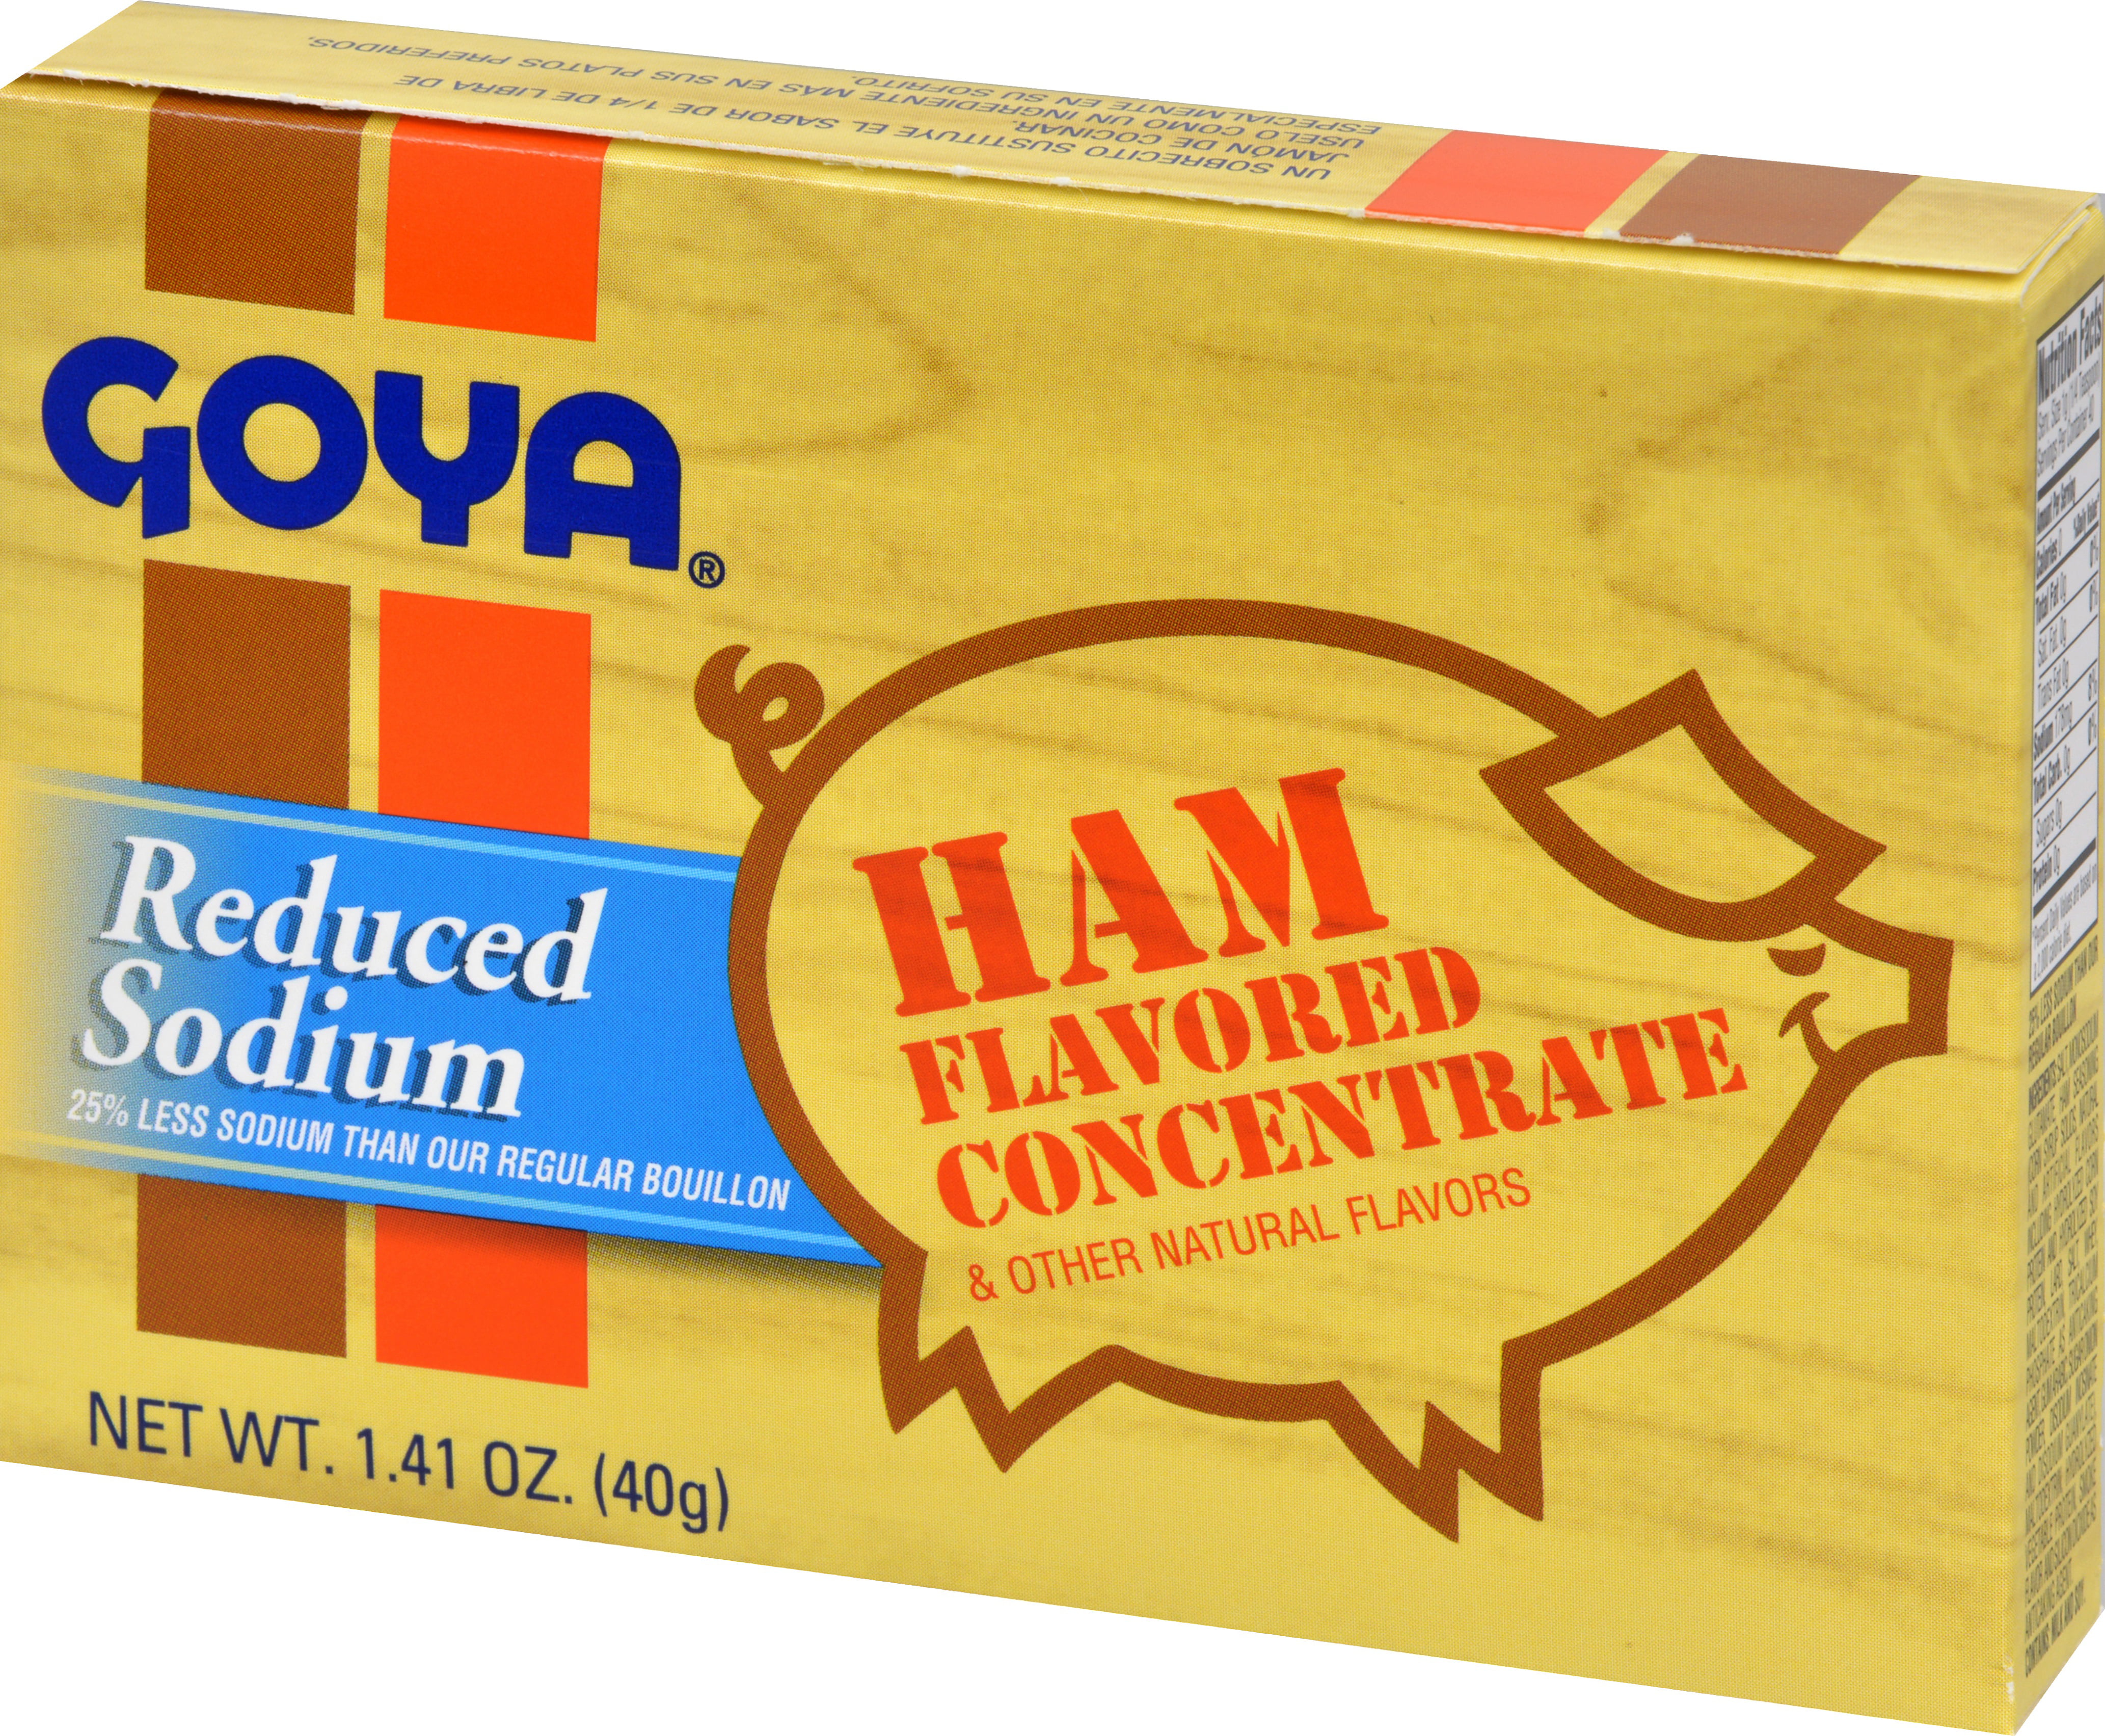 Goya Ham Flavored Concentrate – Shop Goya